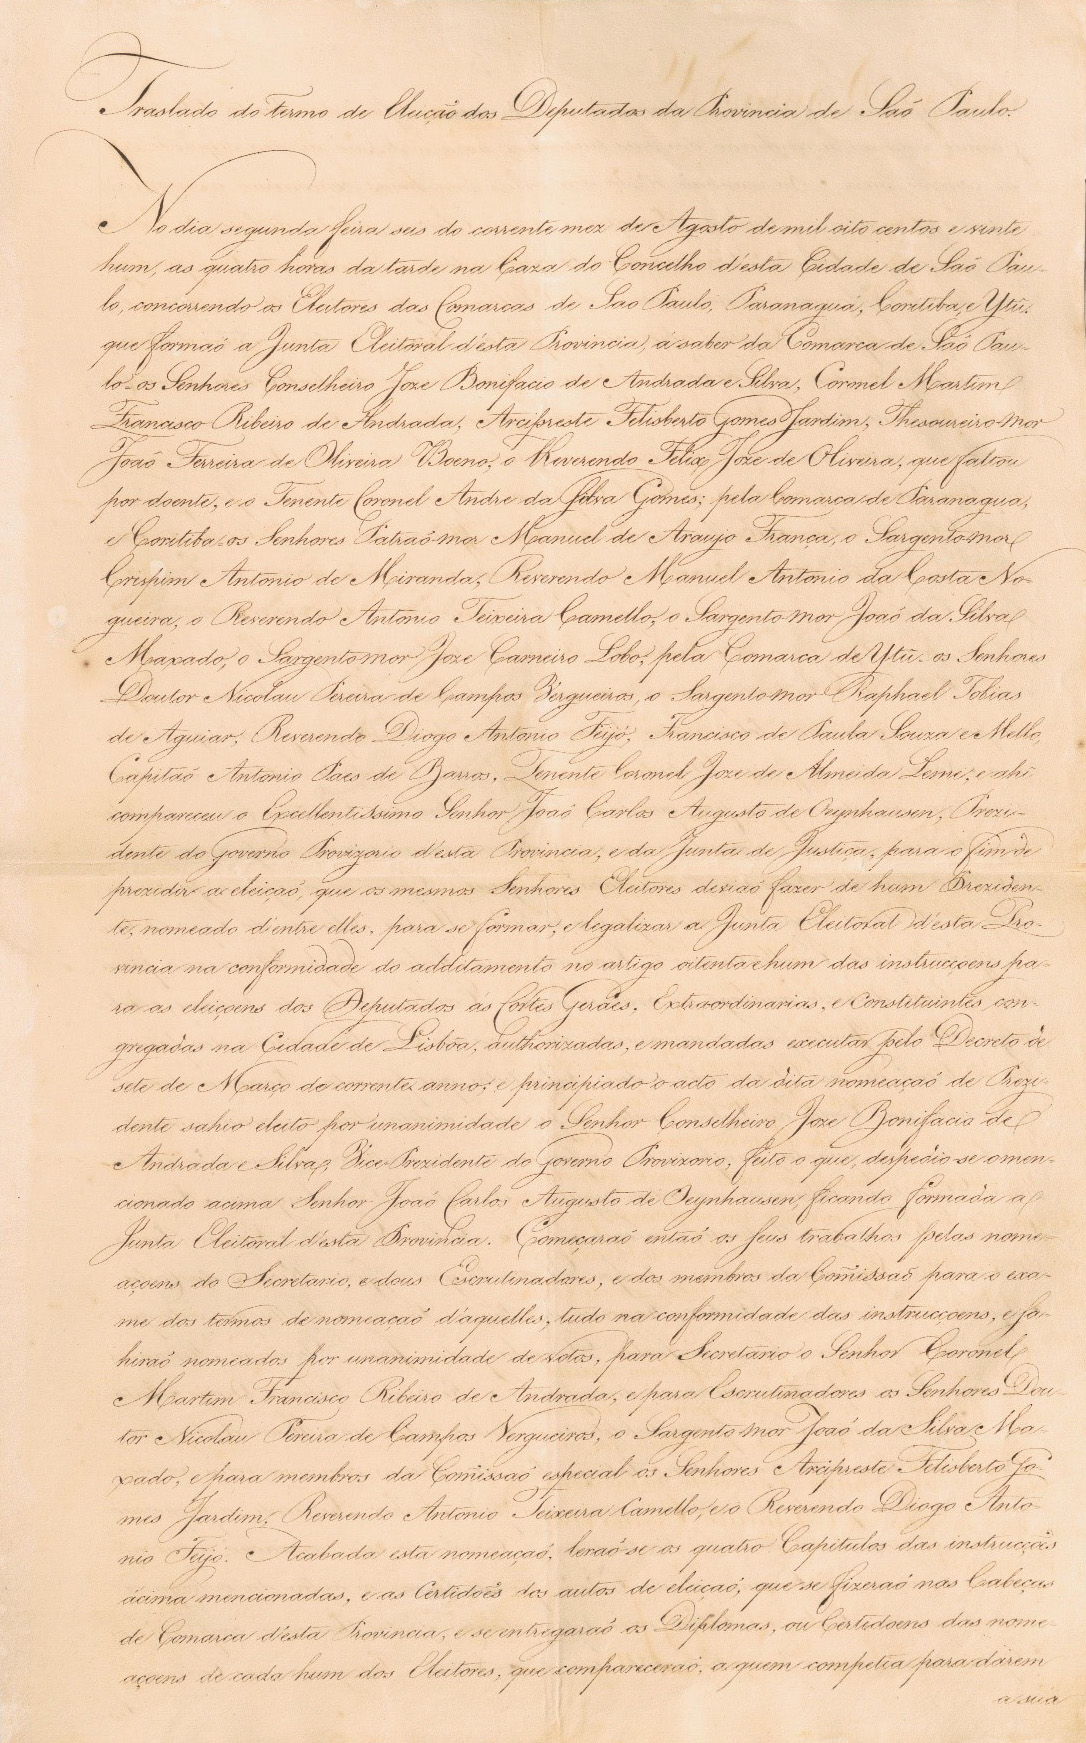 Cópia da Ata da Junta Eleitoral da Província de São Paulo – Auto de eleição. 6 de agosto de 1821.